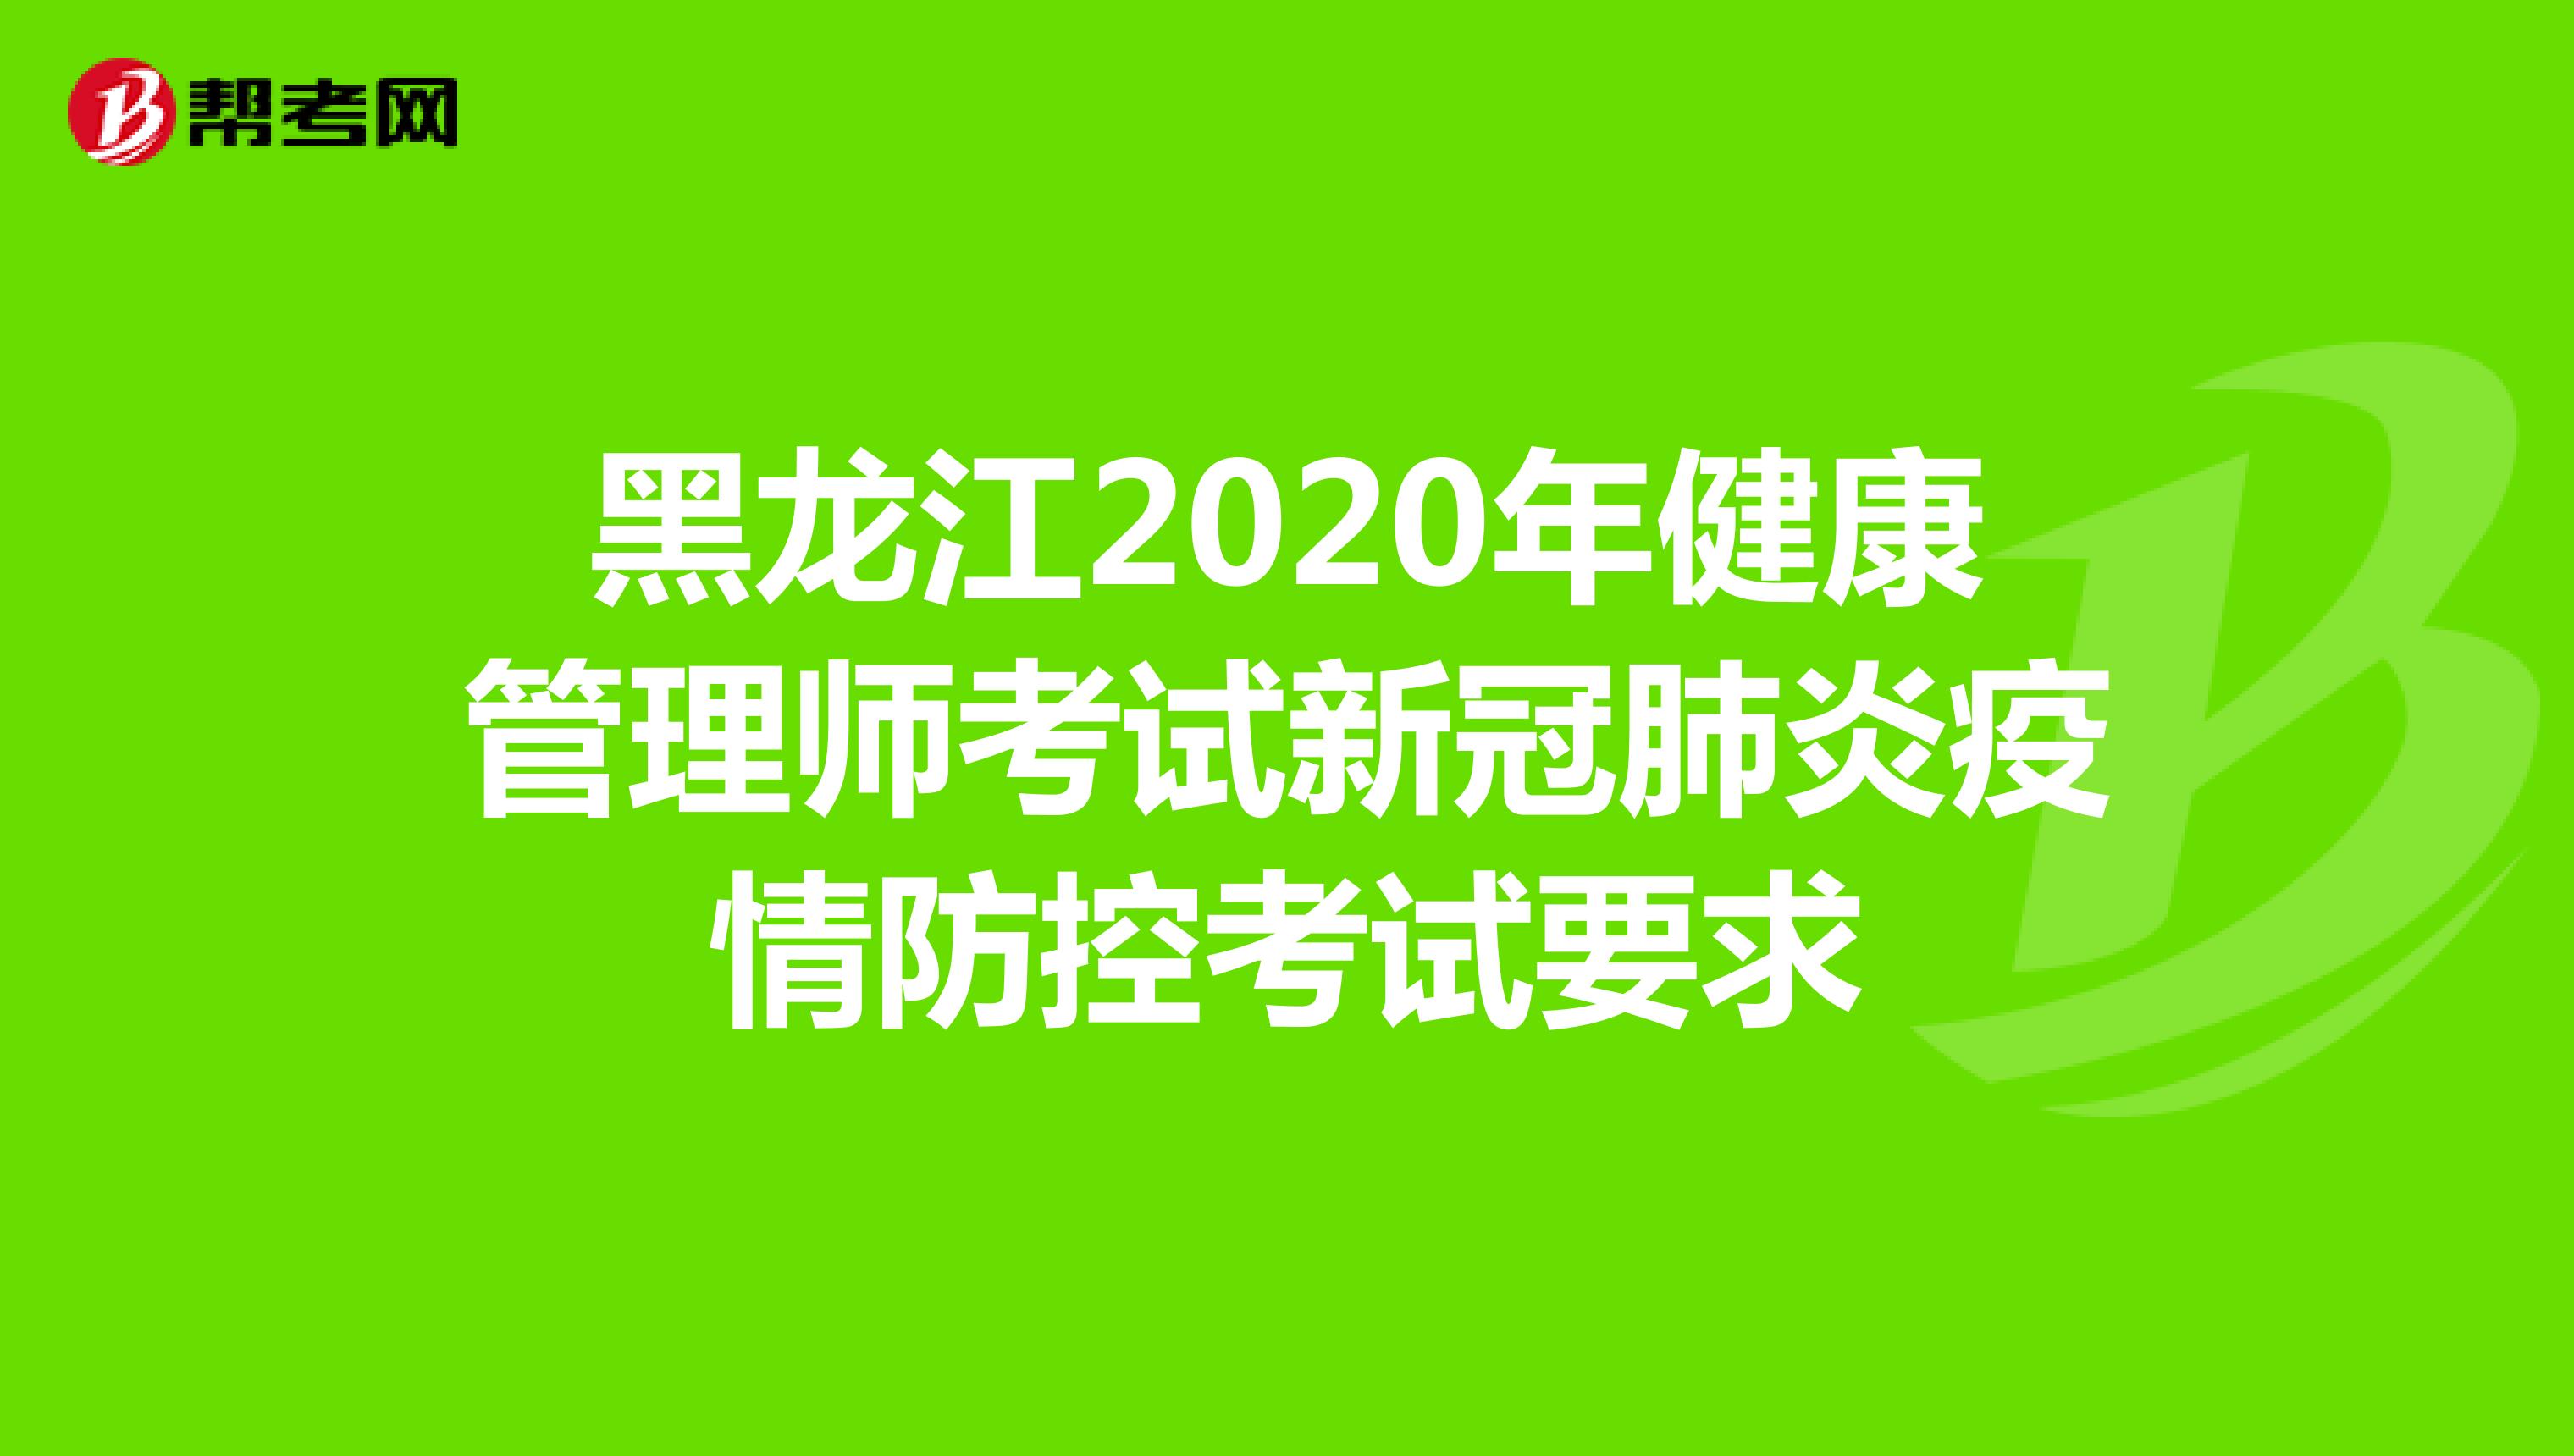 黑龙江2020年健康管理师考试新冠肺炎疫情防控考试要求